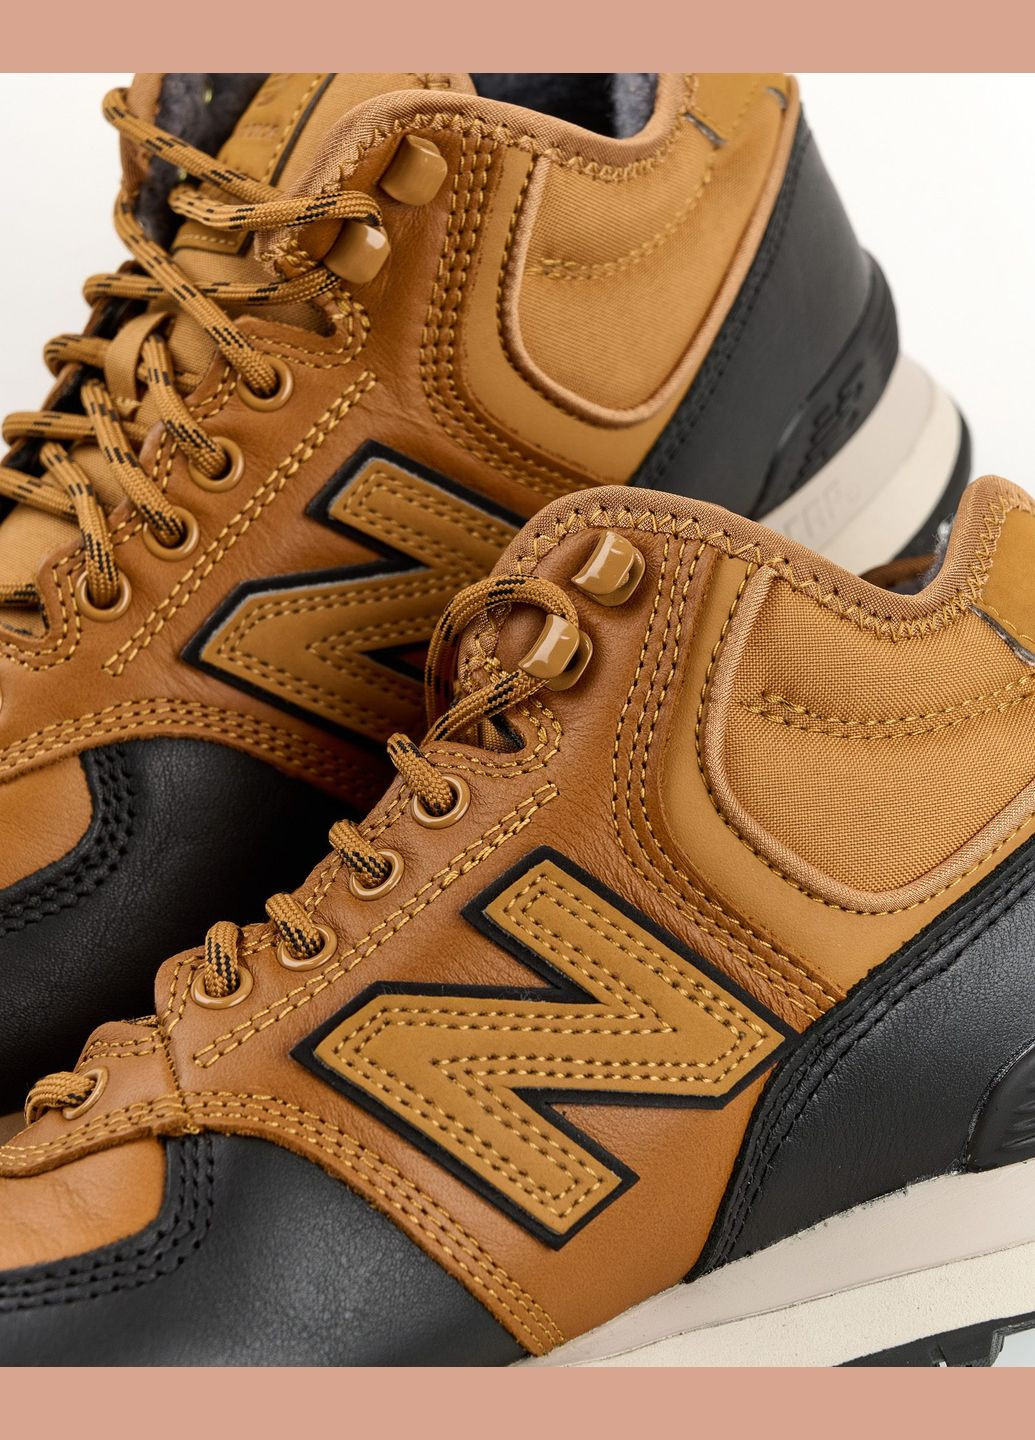 Коричневые всесезонные кроссовки ботинки мужские 574н mh574xb1 зима кожа мех коричневый New Balance